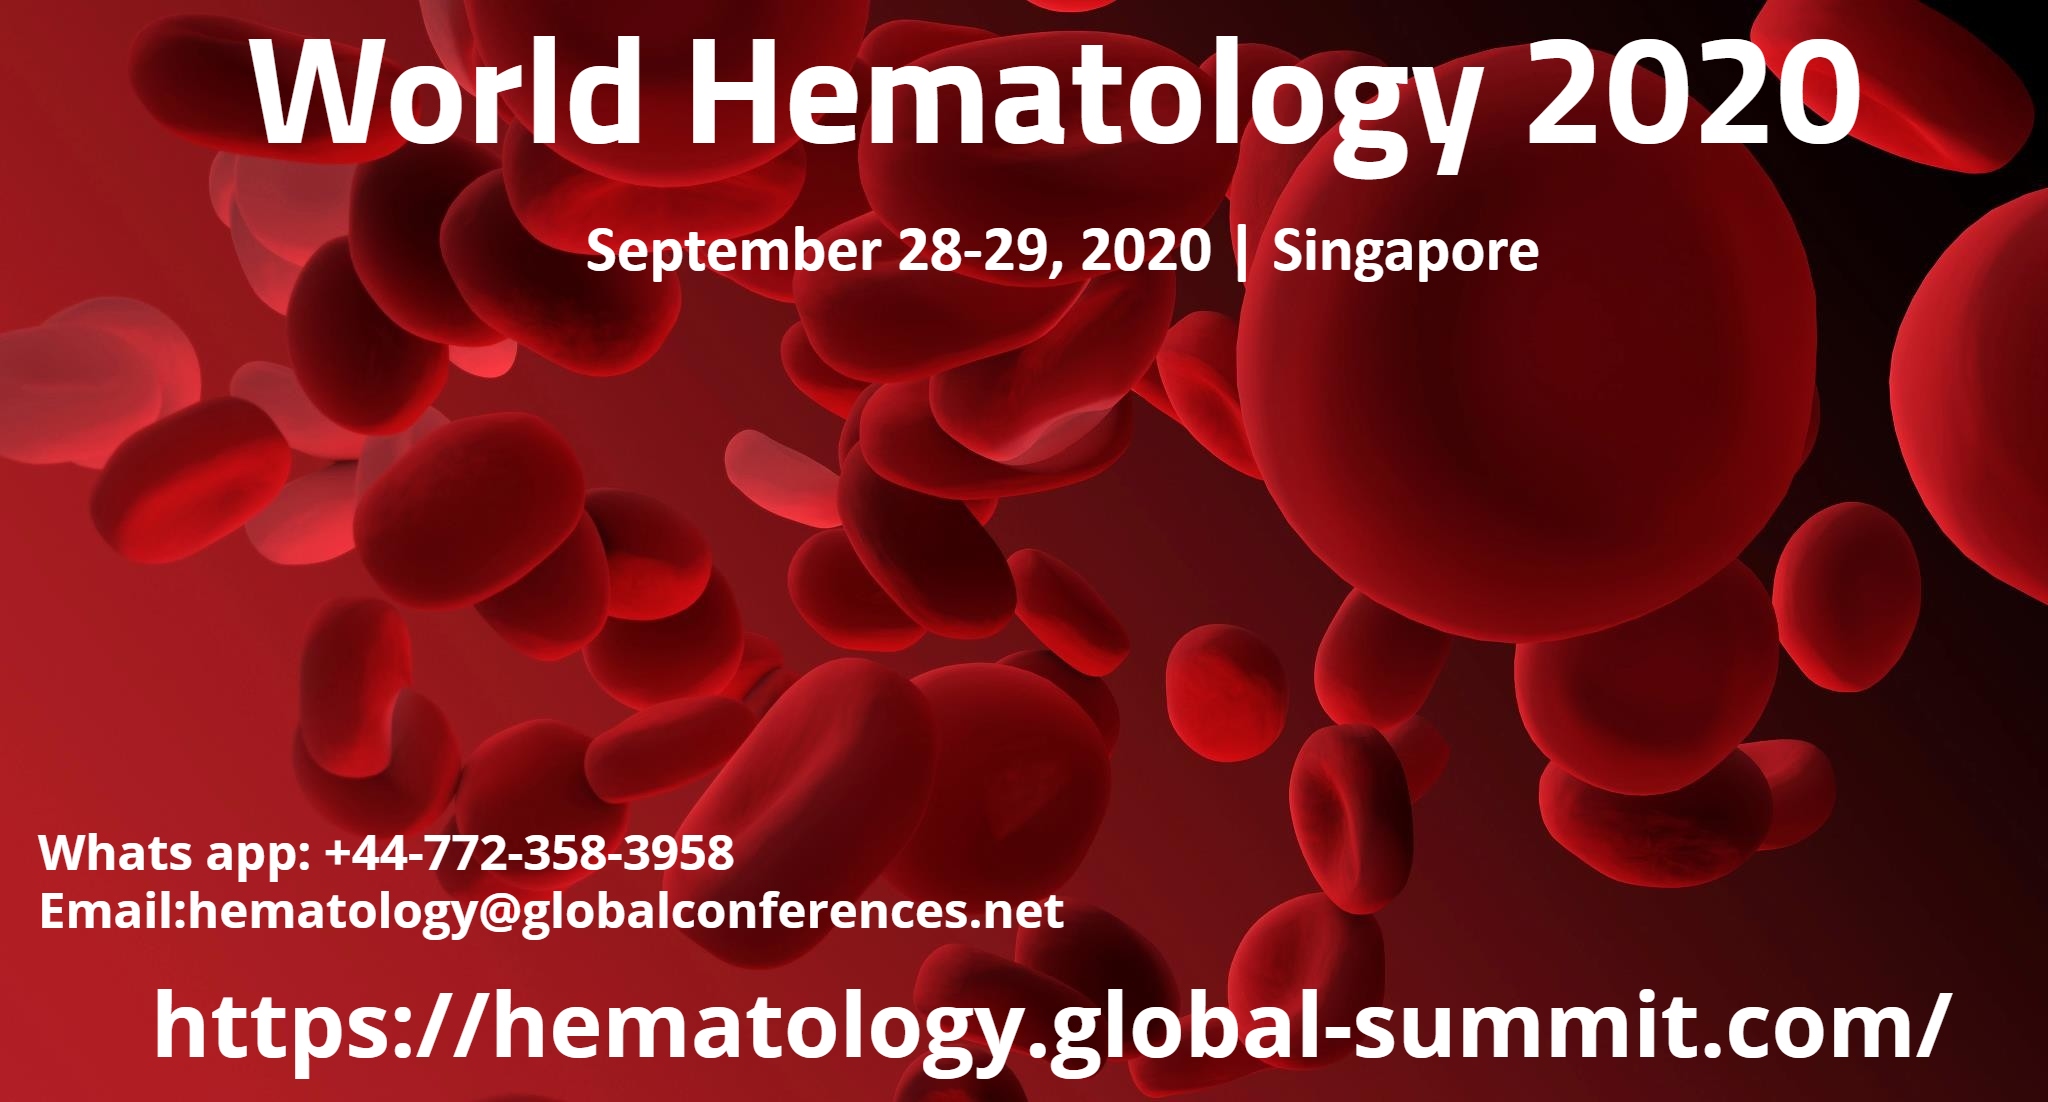 World Hematology 2020